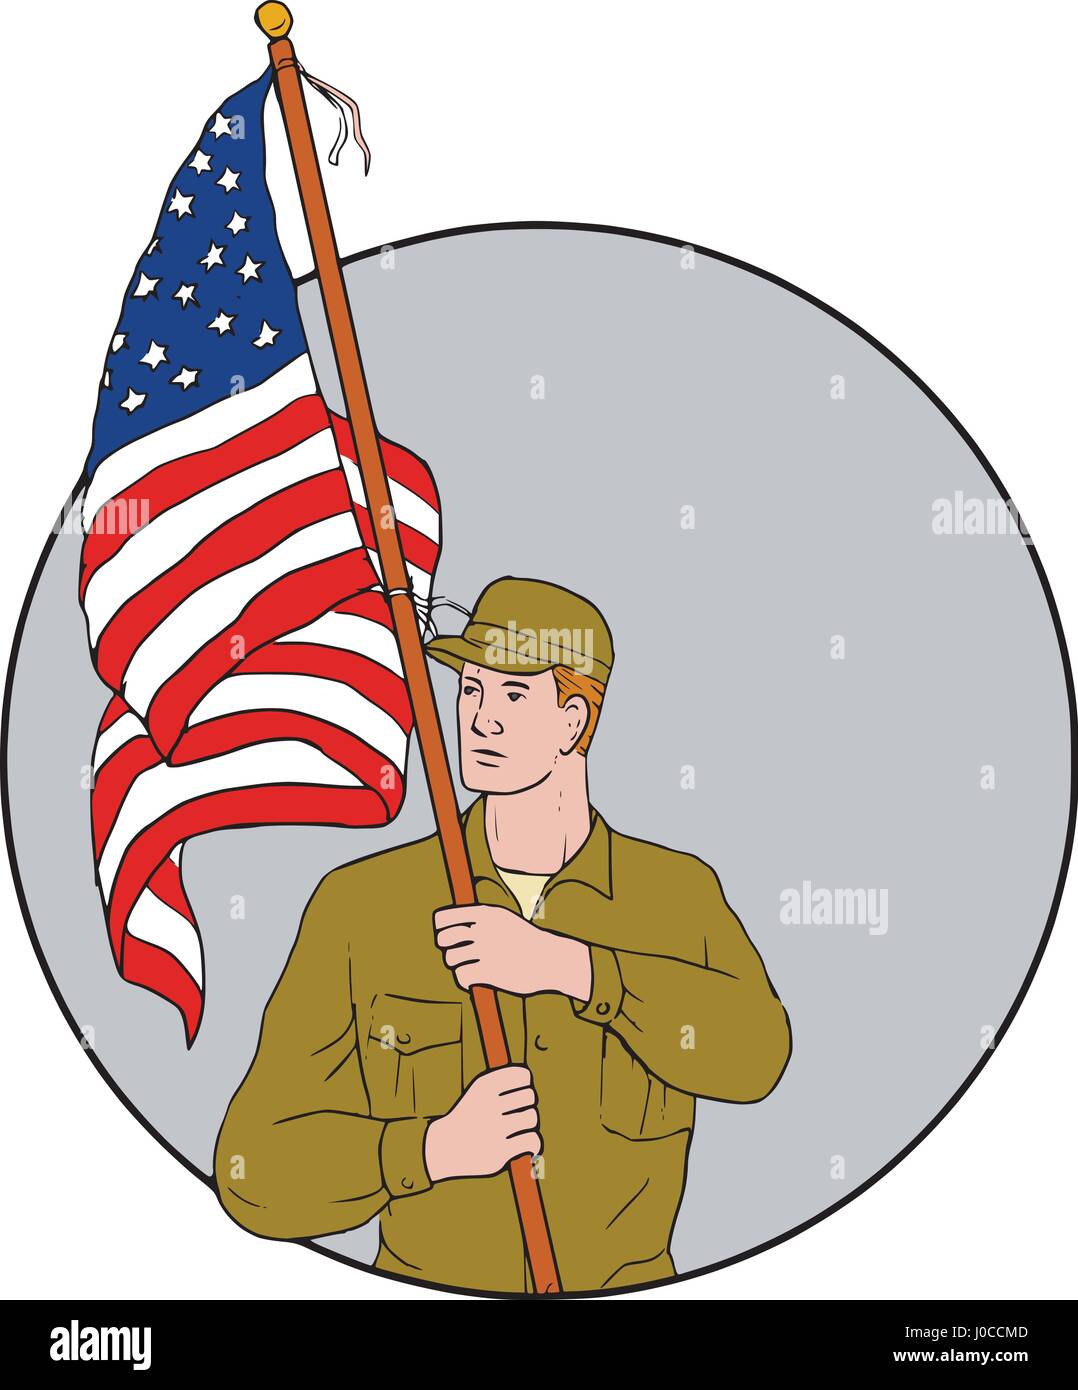 Croquis dessin illustration de style militaire, un soldat américain à la recherche sur le côté holding usa flag avec mât sur l'épaule situé à l'intérieur du cercle sur est Illustration de Vecteur